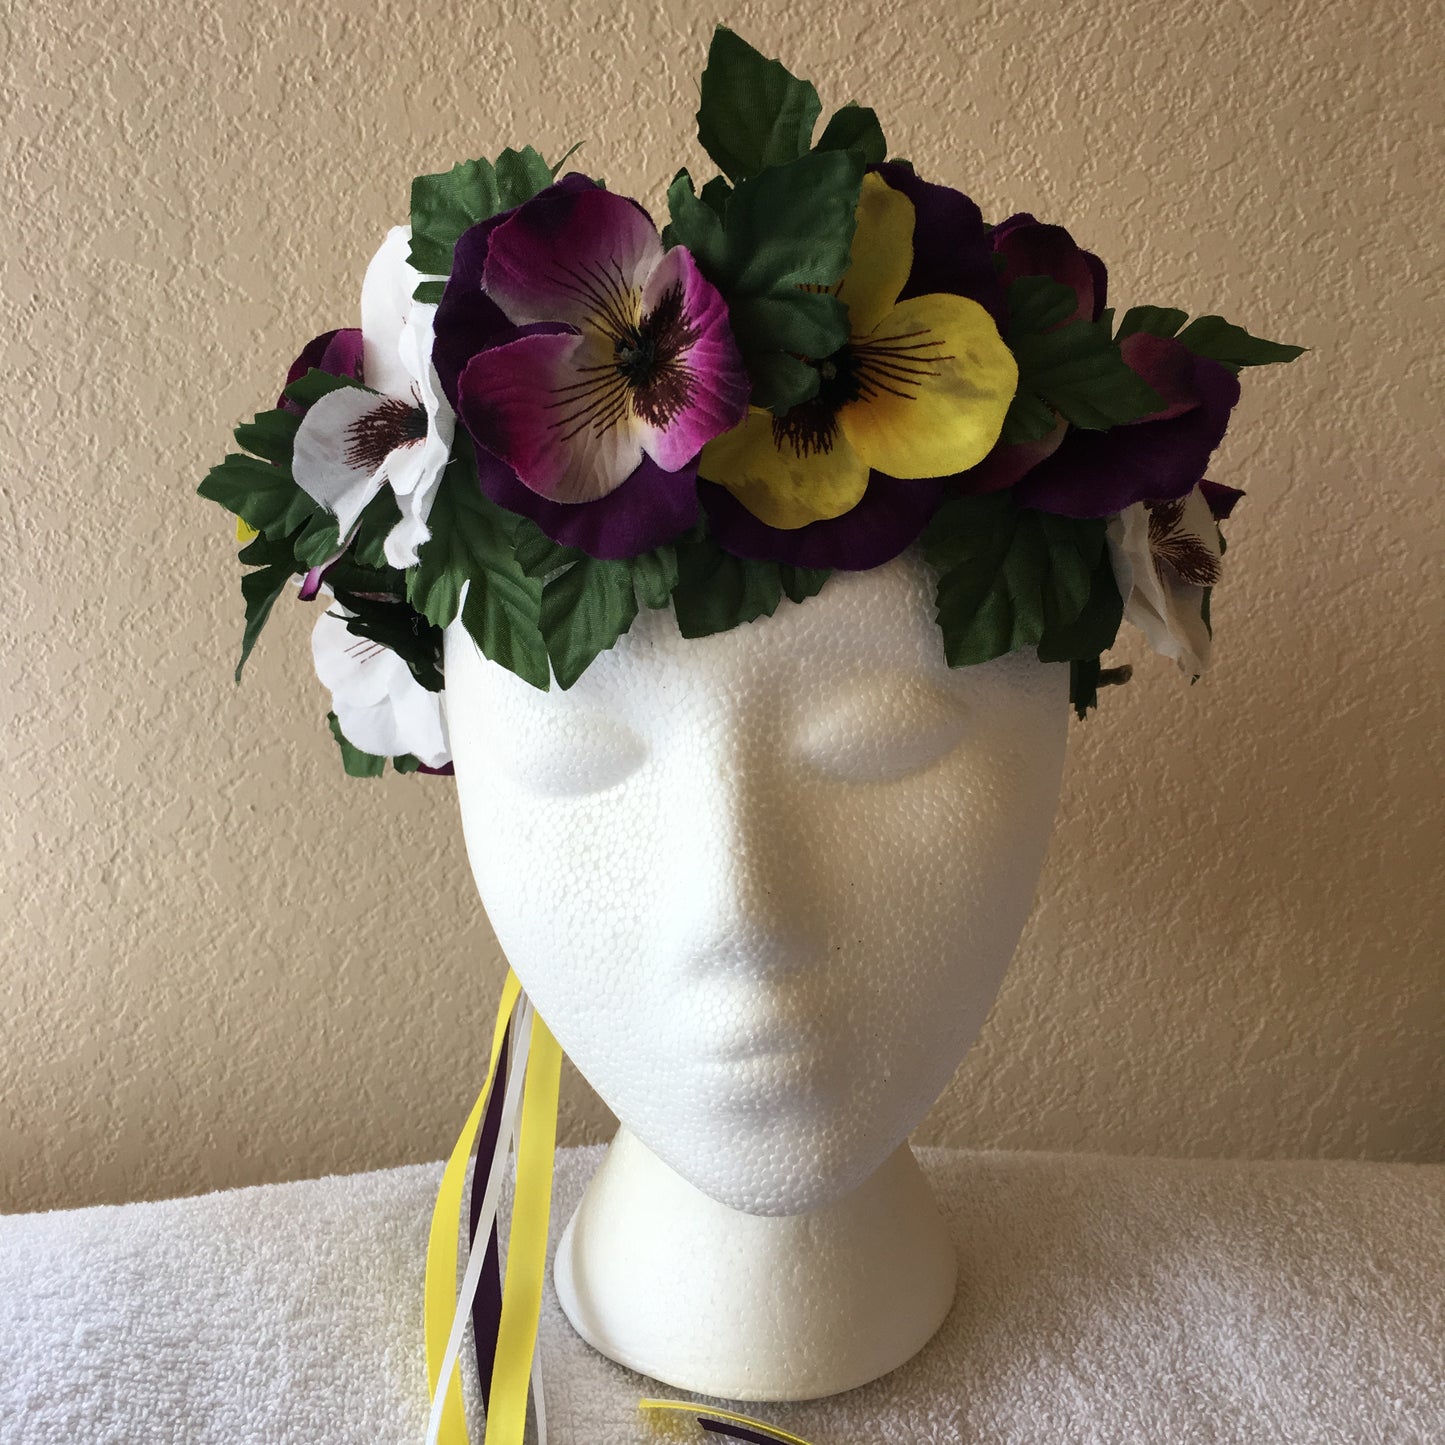 Medium Wreath - White, purple, & yellow pansies (white, purple, & yellow ribbon)